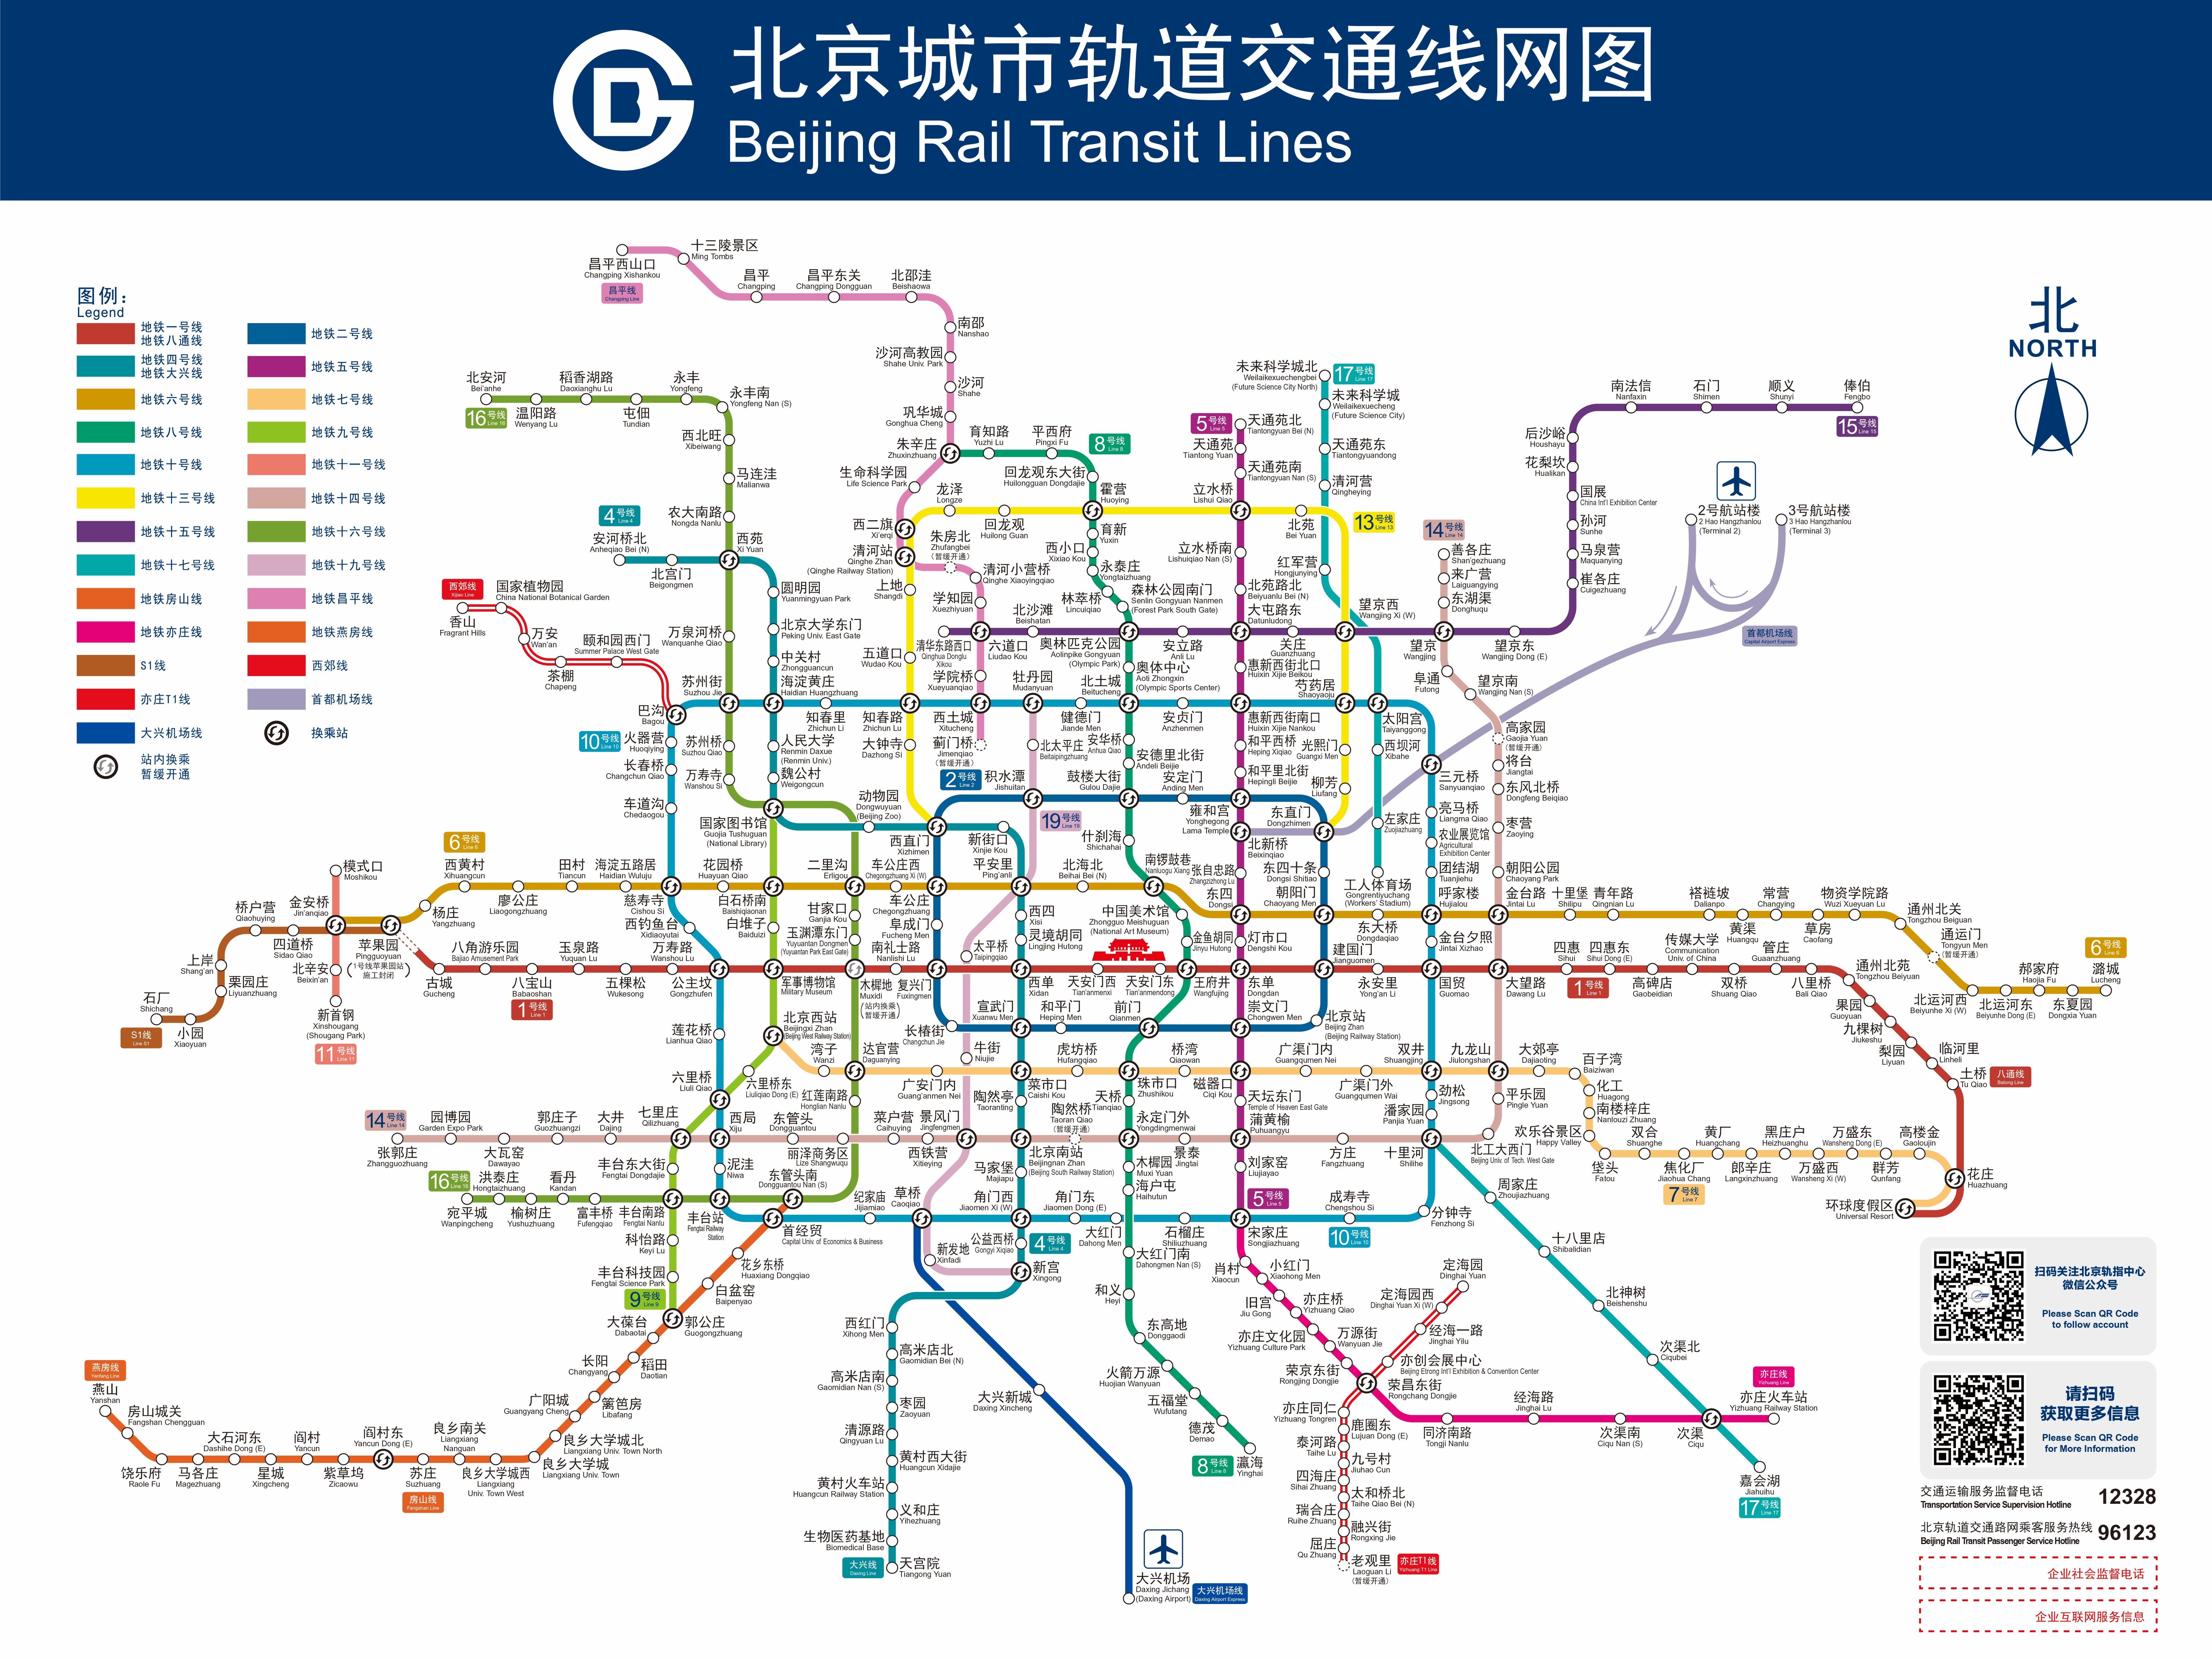 收藏!新版北京轨道交通图来了,年底3段地铁开通